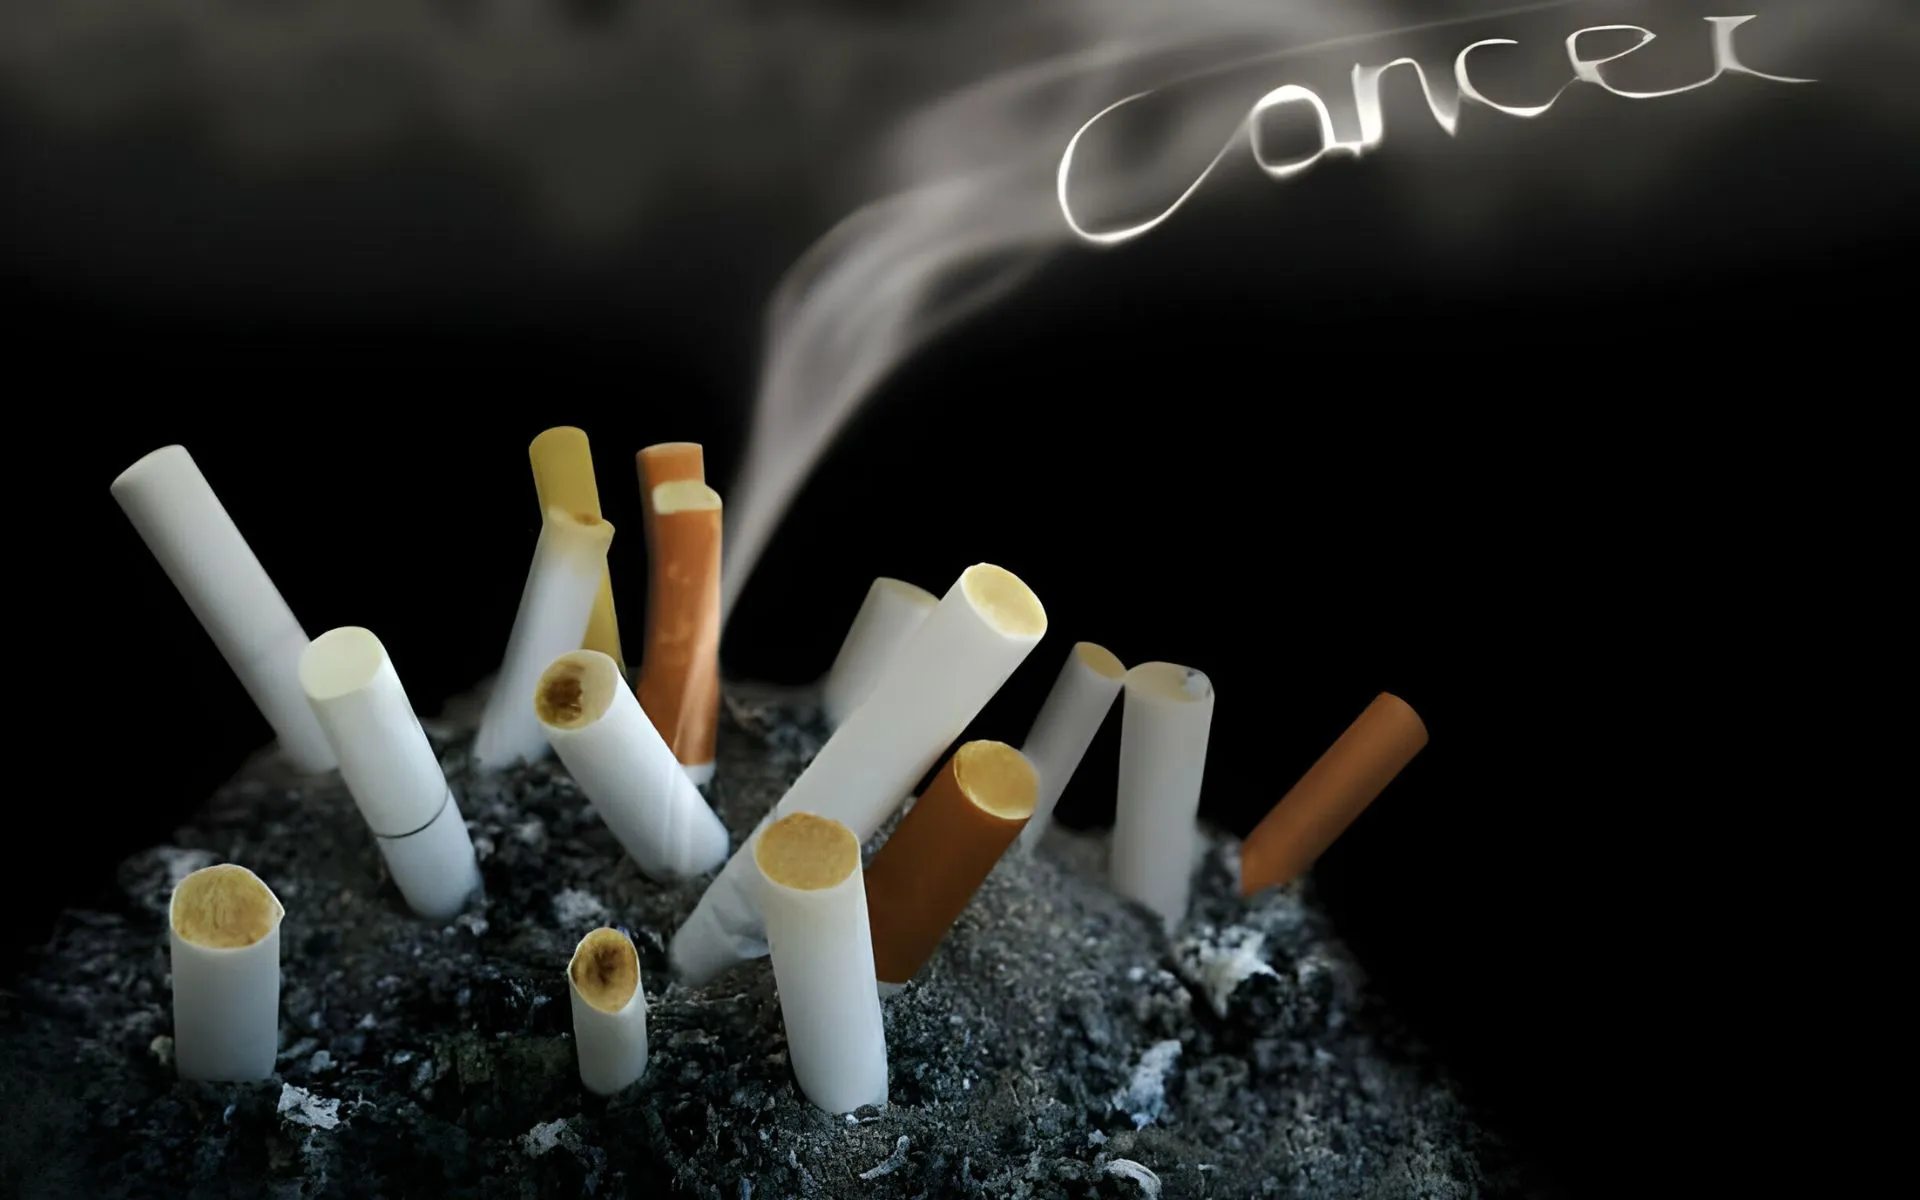 Do e-cigarettes cause lung cancer?